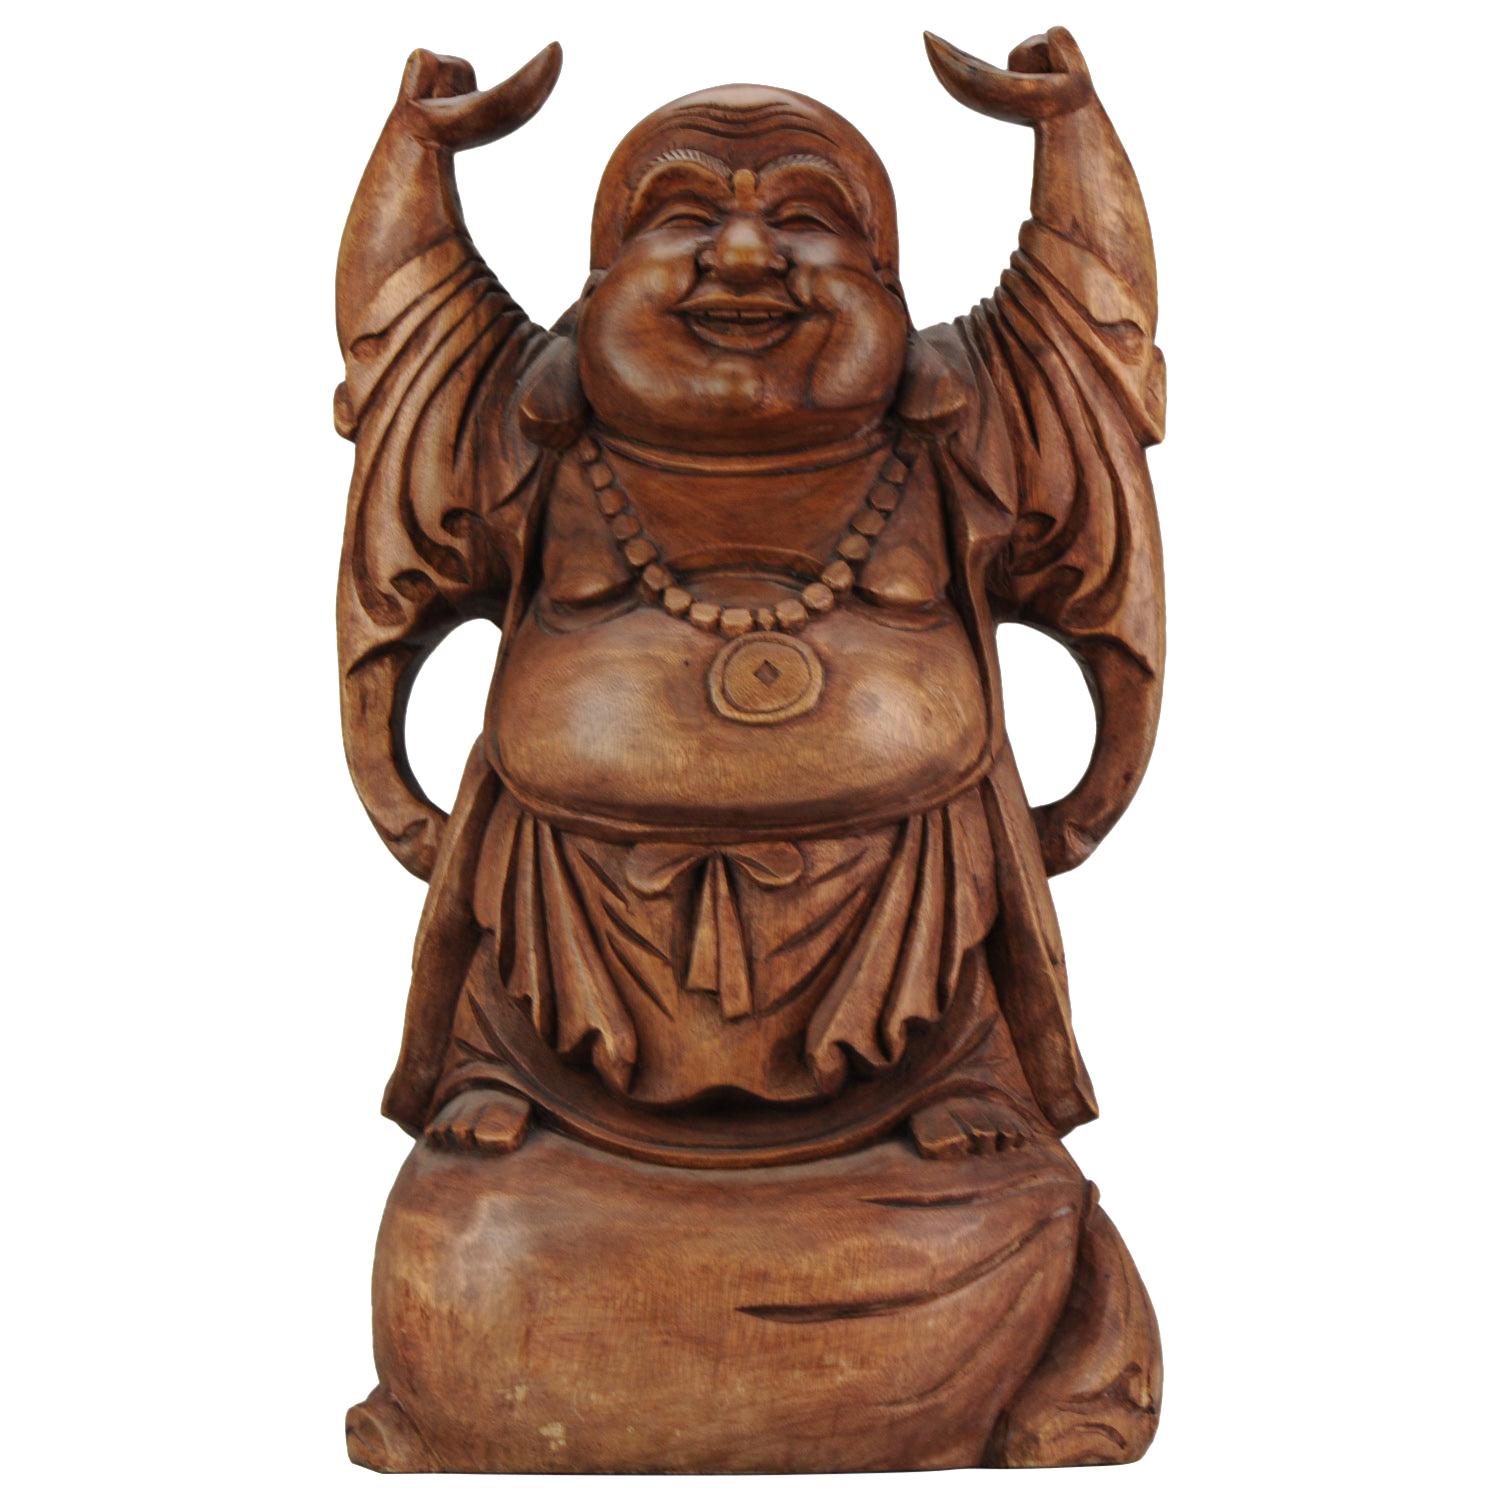 Grande statue chinoise en bois sculpté du 20e siècle représentant un Bouddha riant, superbe sculpture